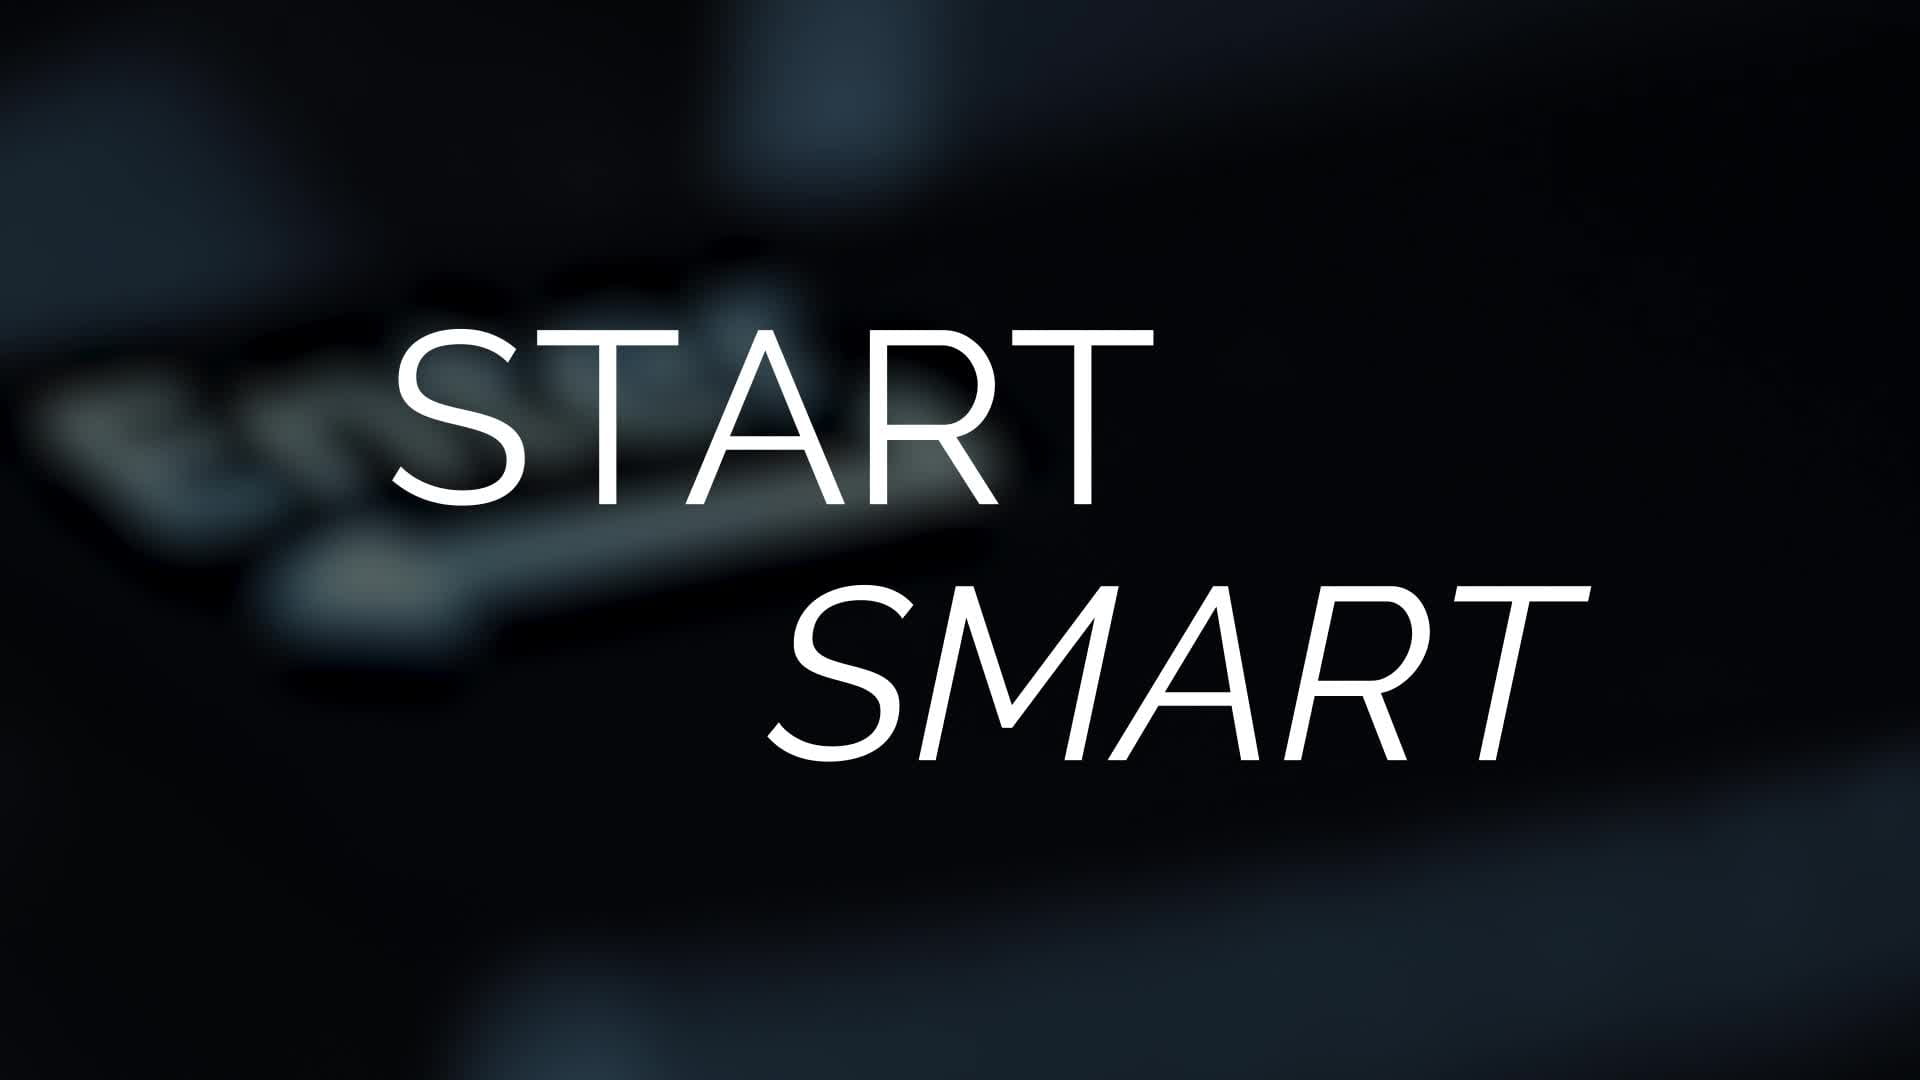 Start Smart Video Still 